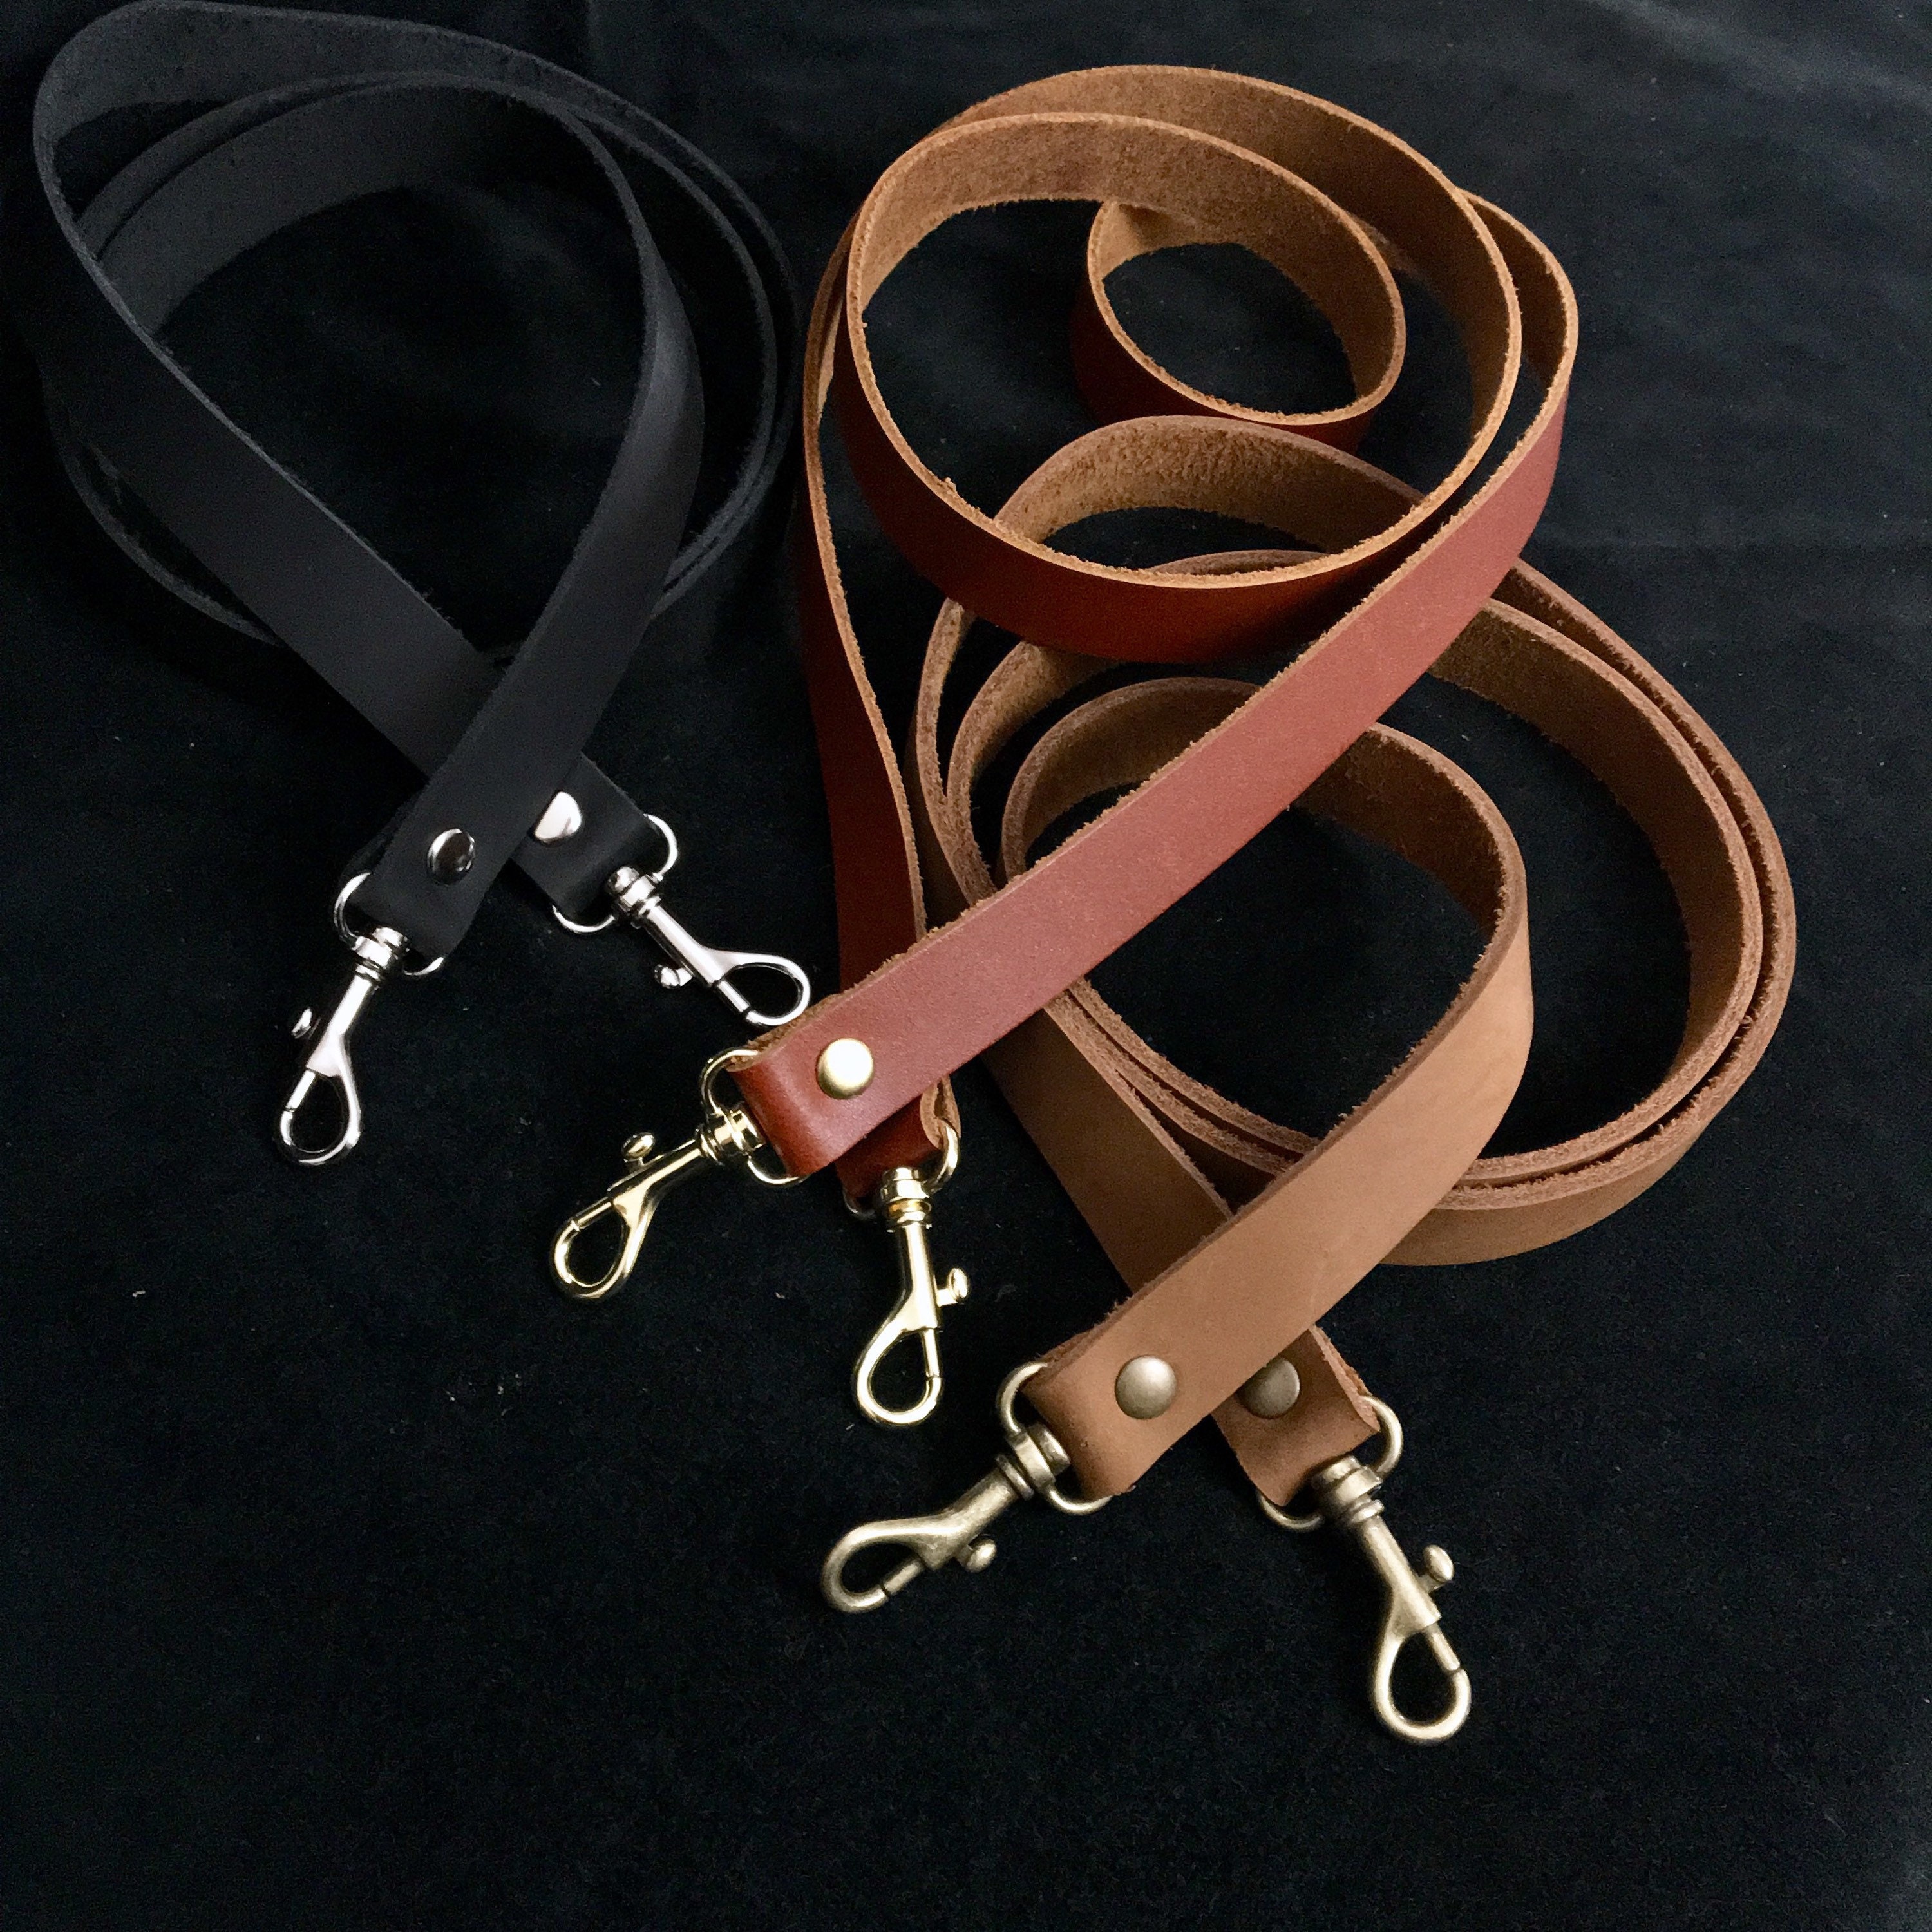 Leather Shoulder Bag/Purse Strap - Choose Color & Finish - 30 Length, 3/4  Wide, #13 Snap Hooks